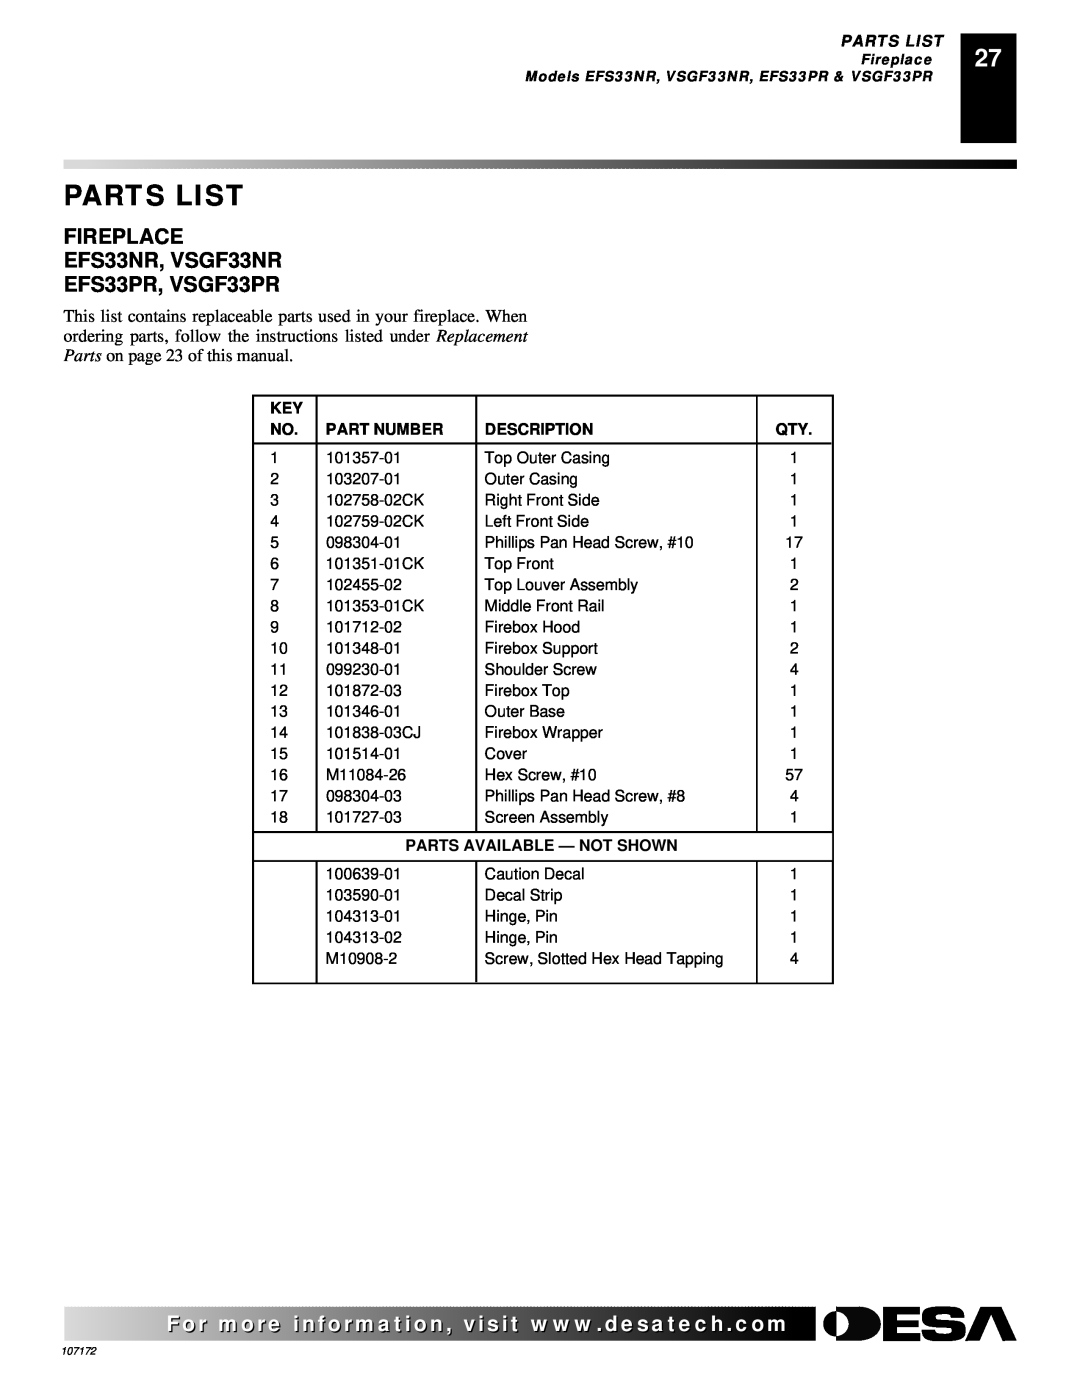 Desa FIREPLACE EFS33NR, VSGF33NR EFS33PR, VSGF33PR, Parts List, Part Number, Description, Parts Available - Not Shown 